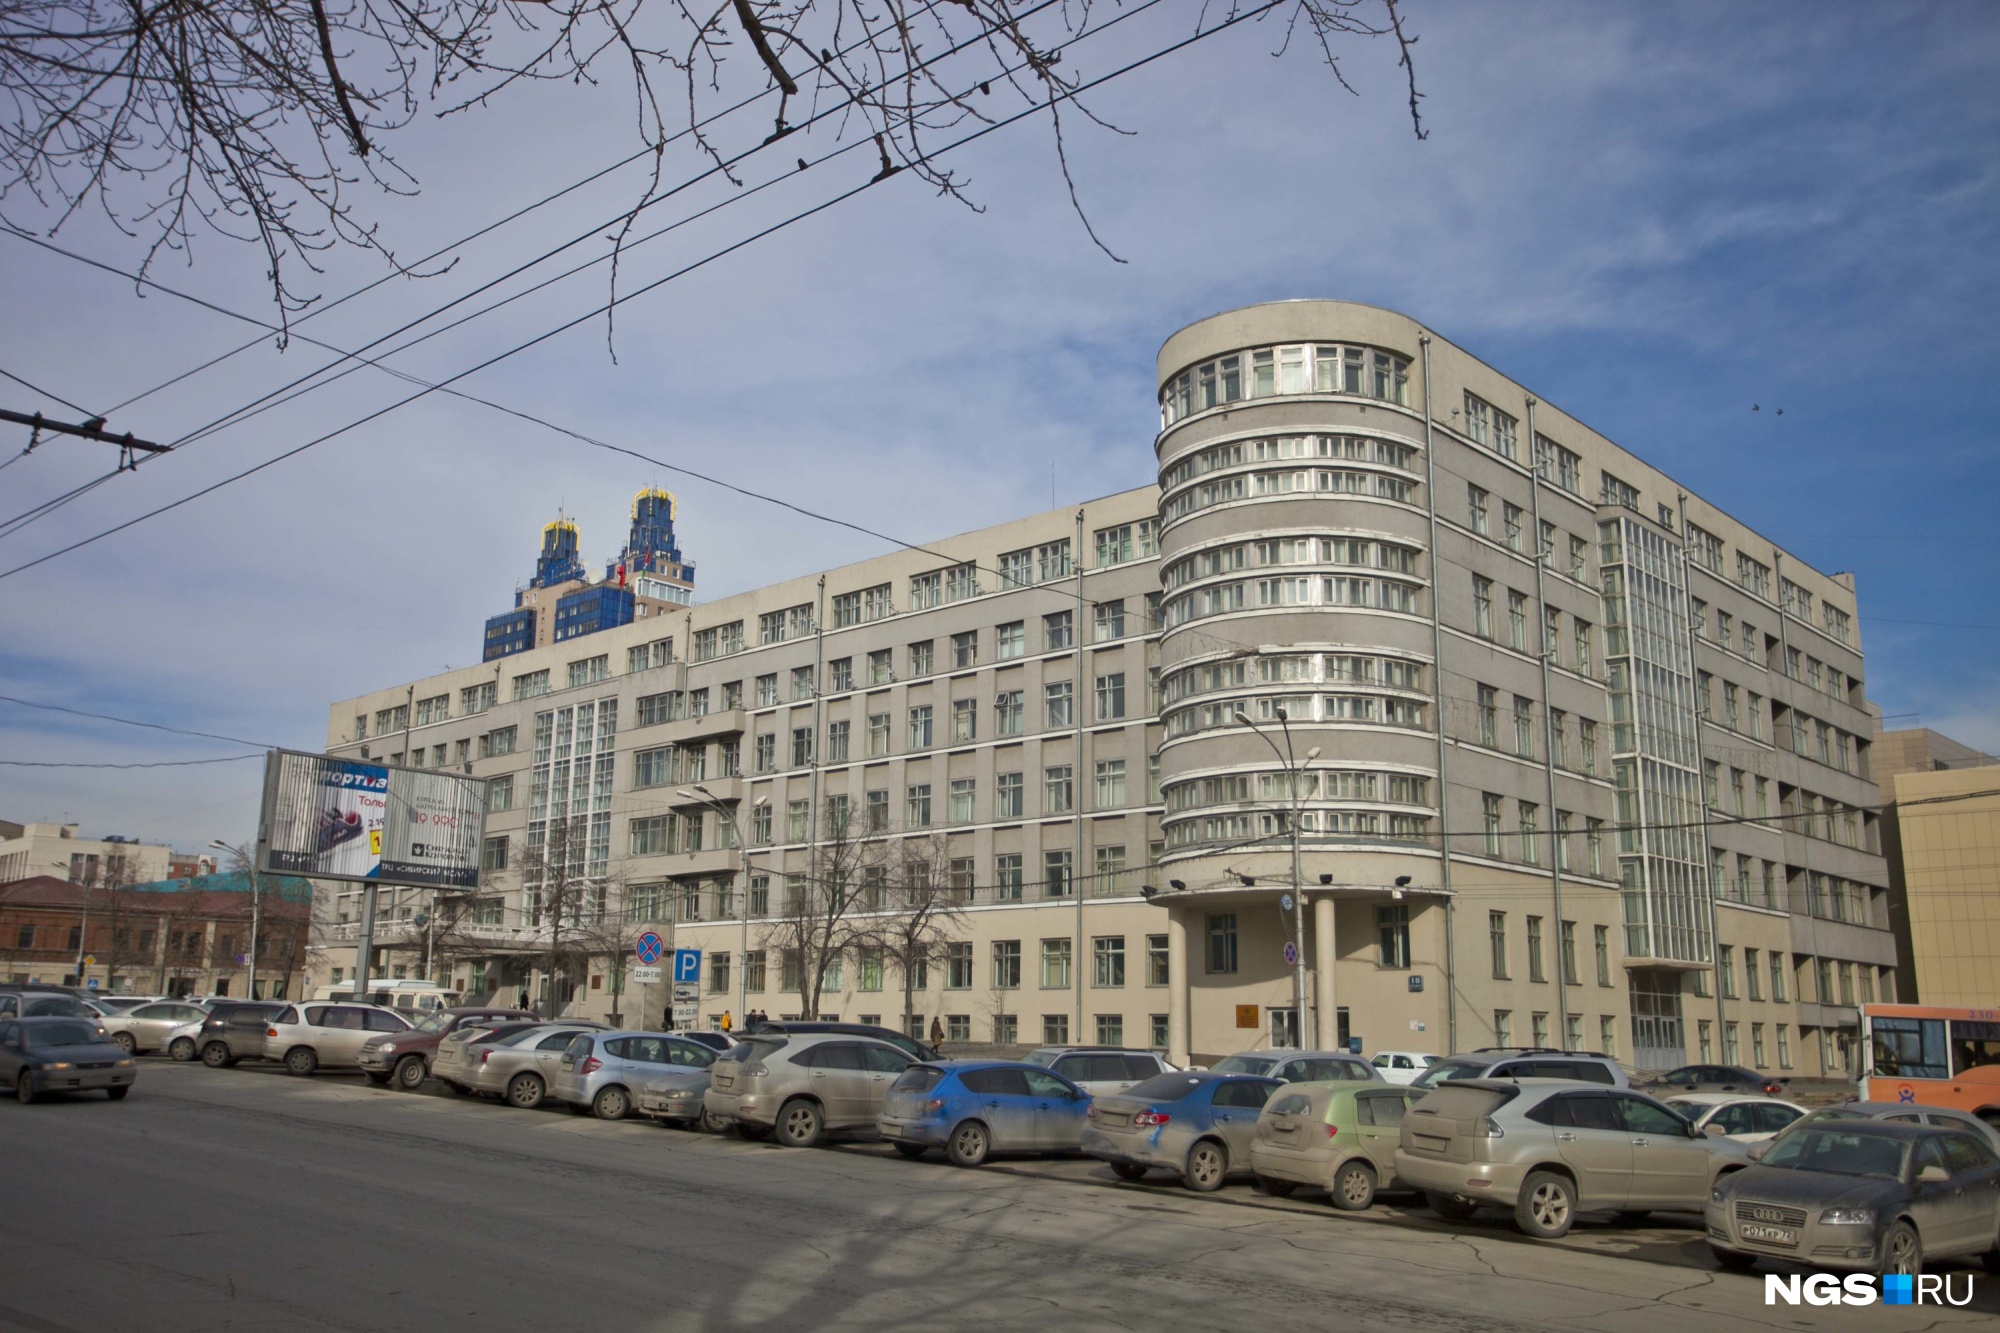 Начальника управления капитального строительства Новосибирской области вызвали на допрос в СК